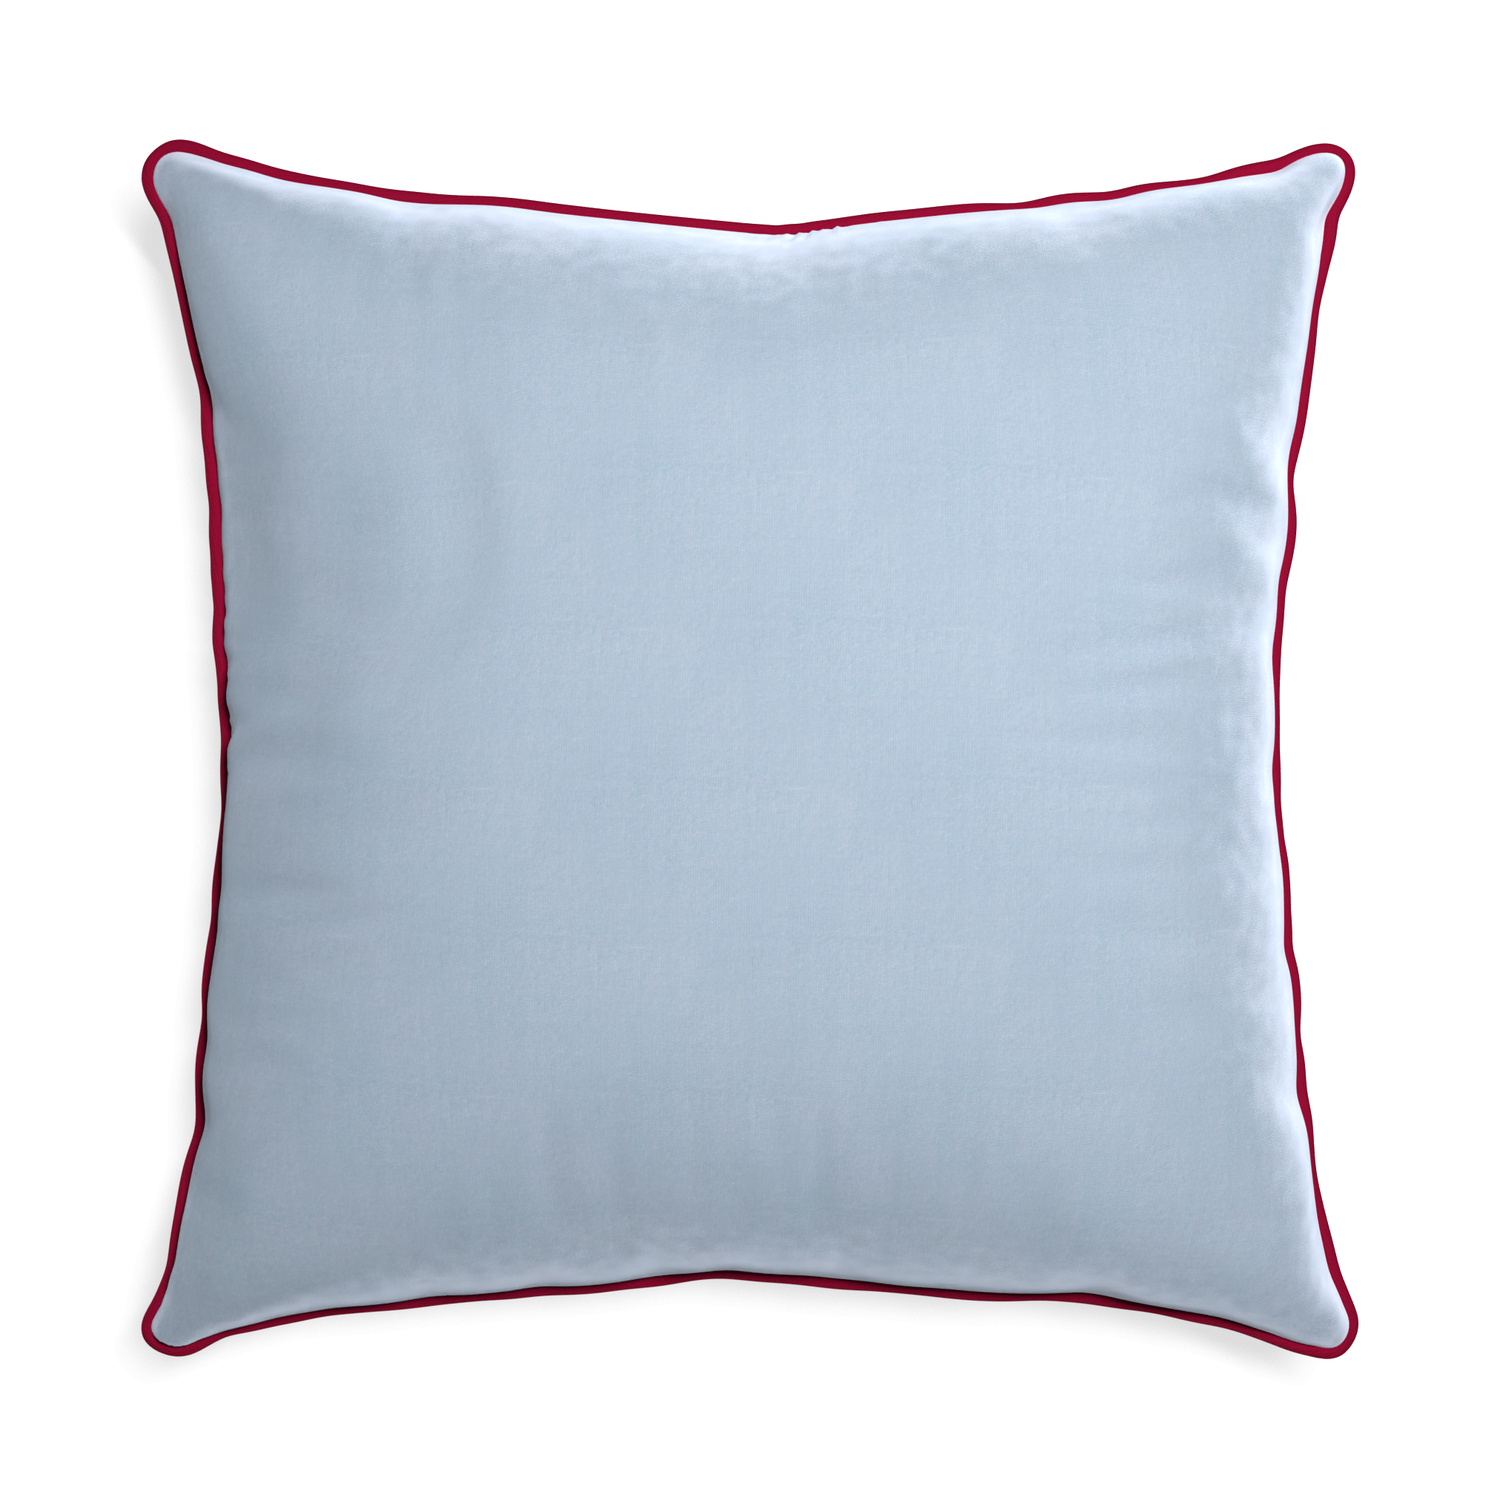 Euro-sham sky velvet custom pillow with raspberry piping on white background